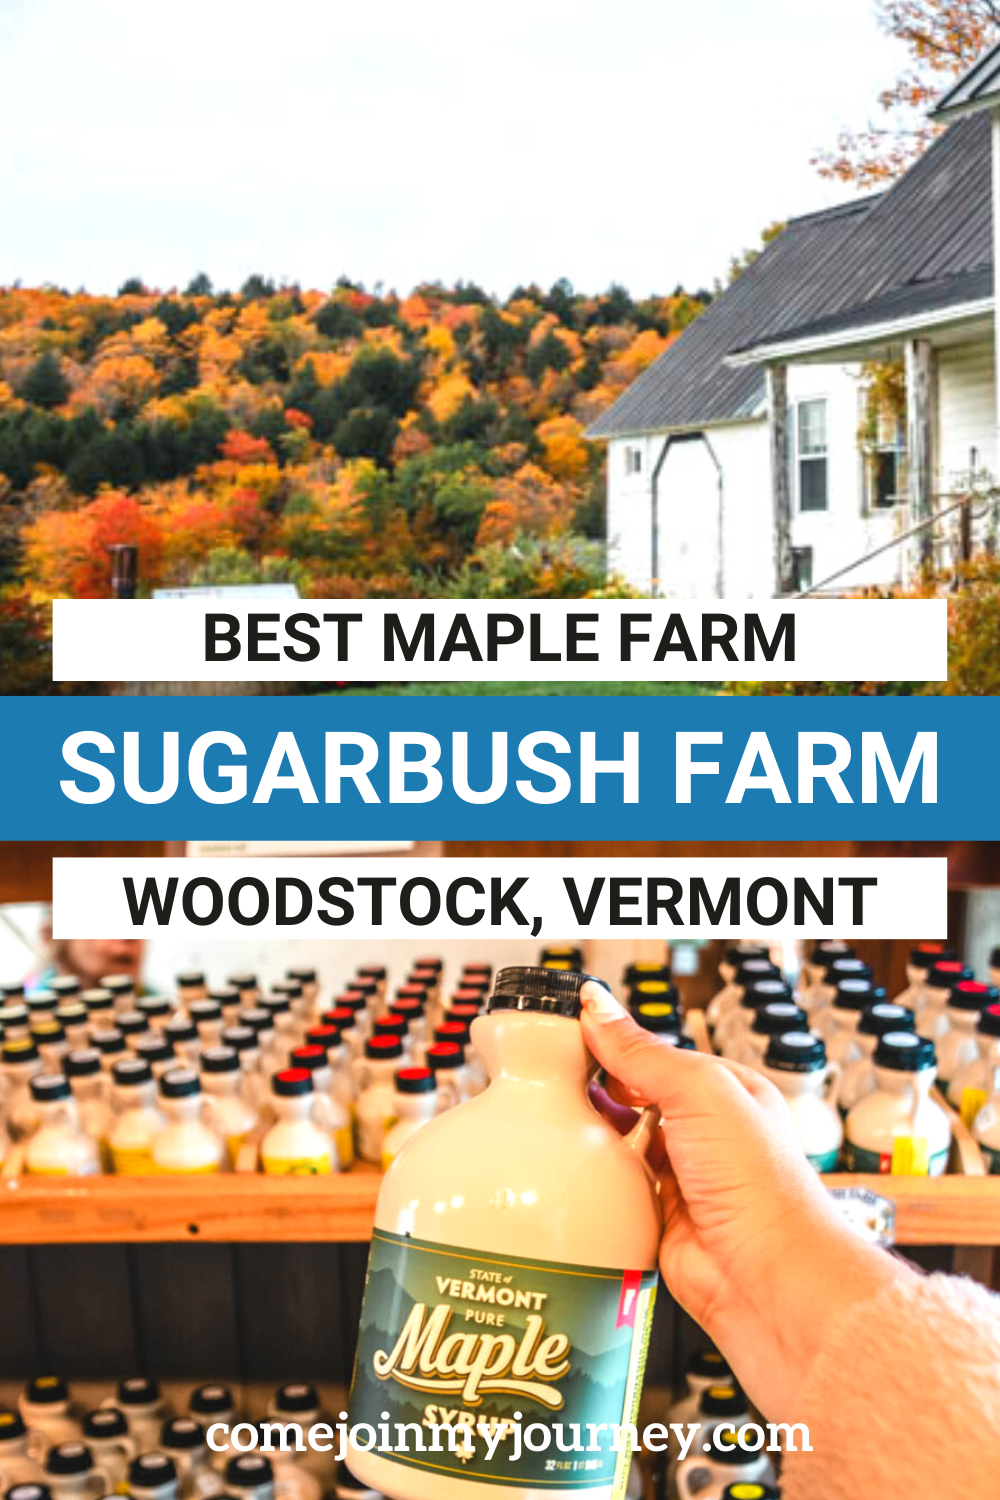 Sugarbush Farm in Woodstock Vermont